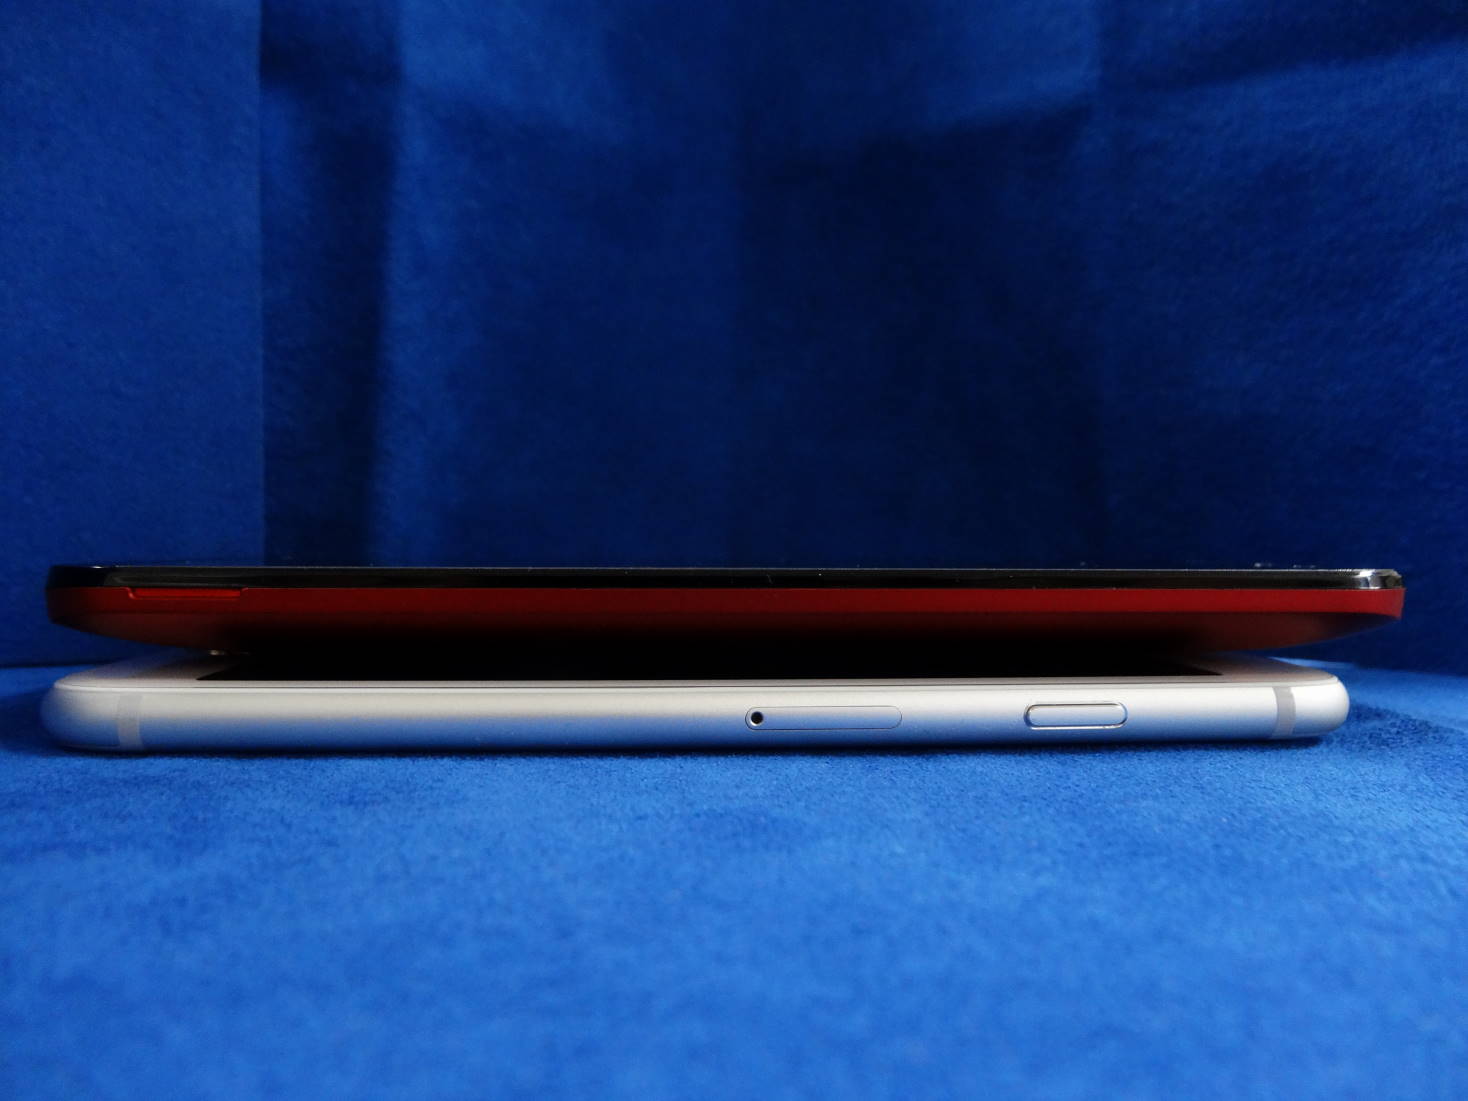 ASUS ZenFone 2 Laser (ZE500KL) と iPhone 6 縦幅比較